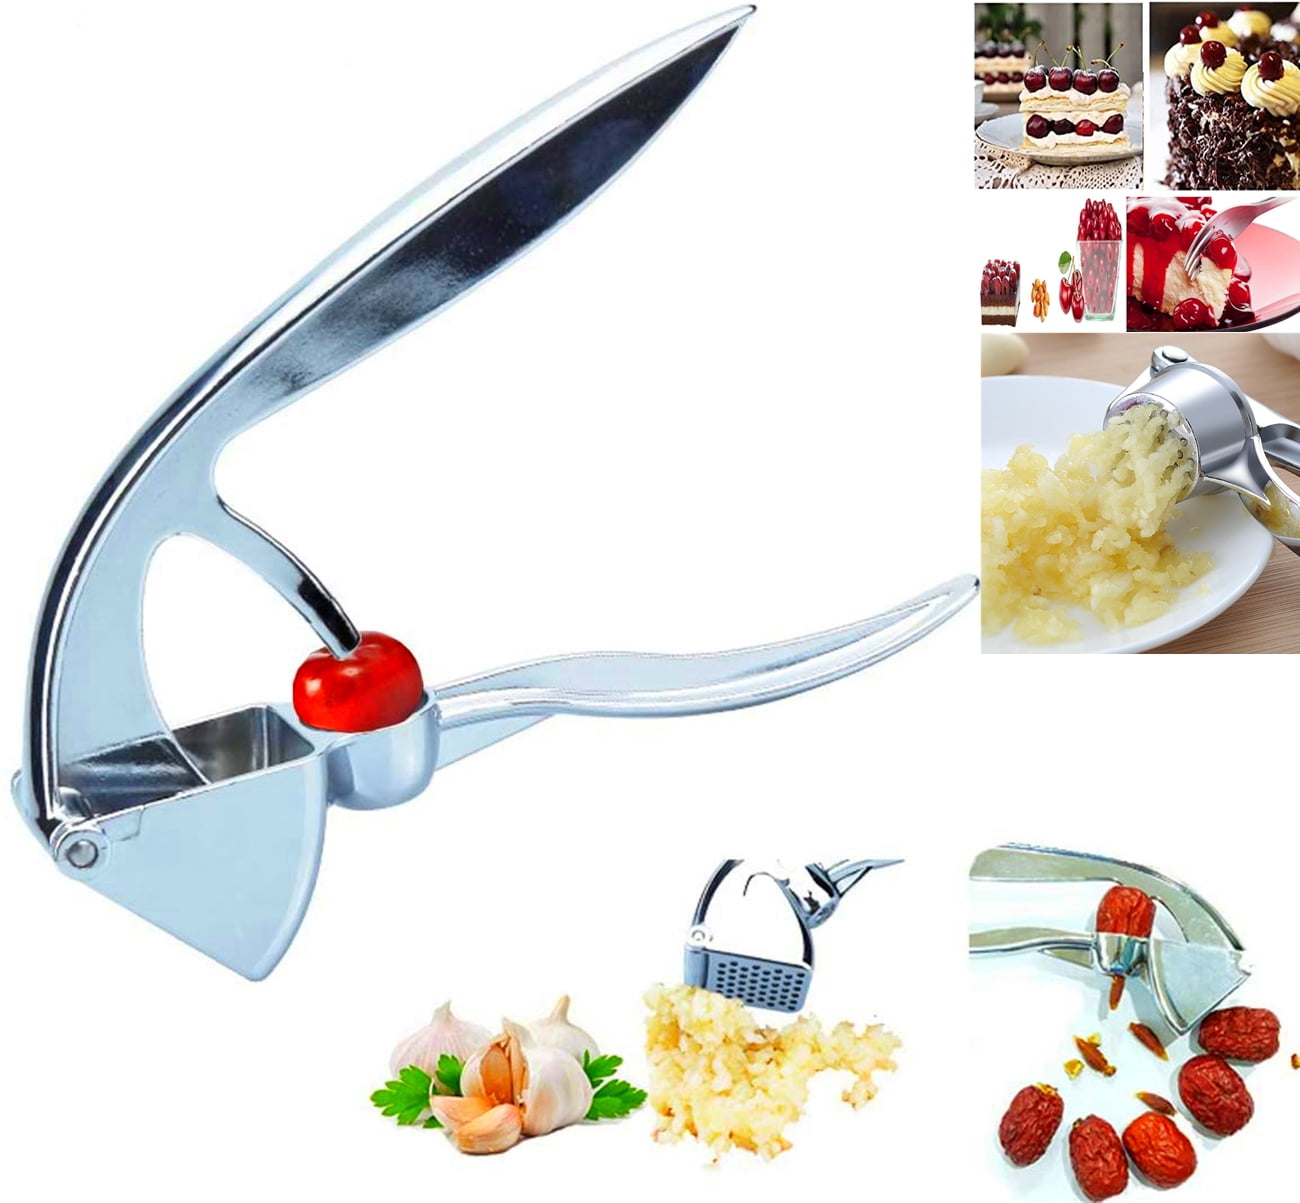 1pc Garlic Press, Roller Type Garlic Mincer Chopper, Kitchen